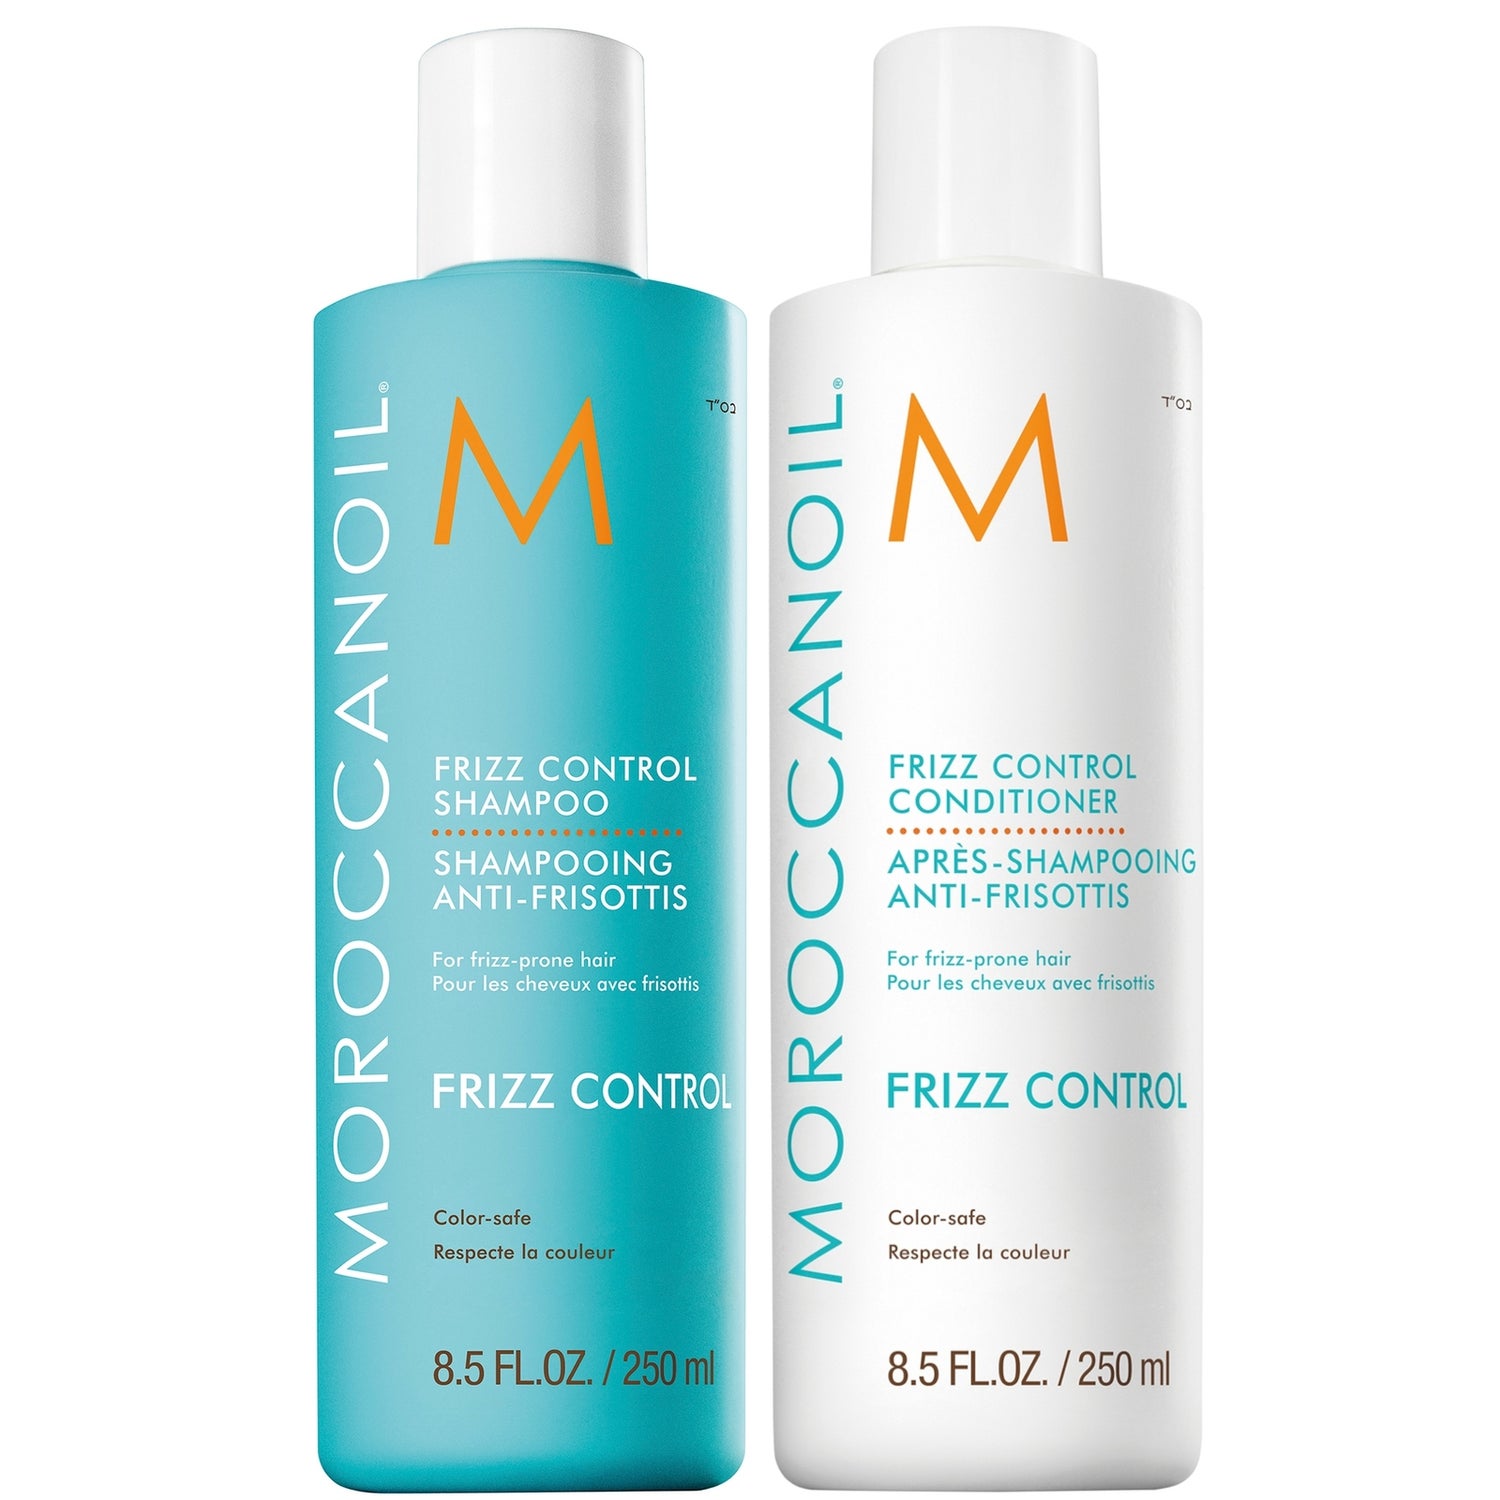 Moroccanoil Frizz Control Shampoo and Conditioner Duo